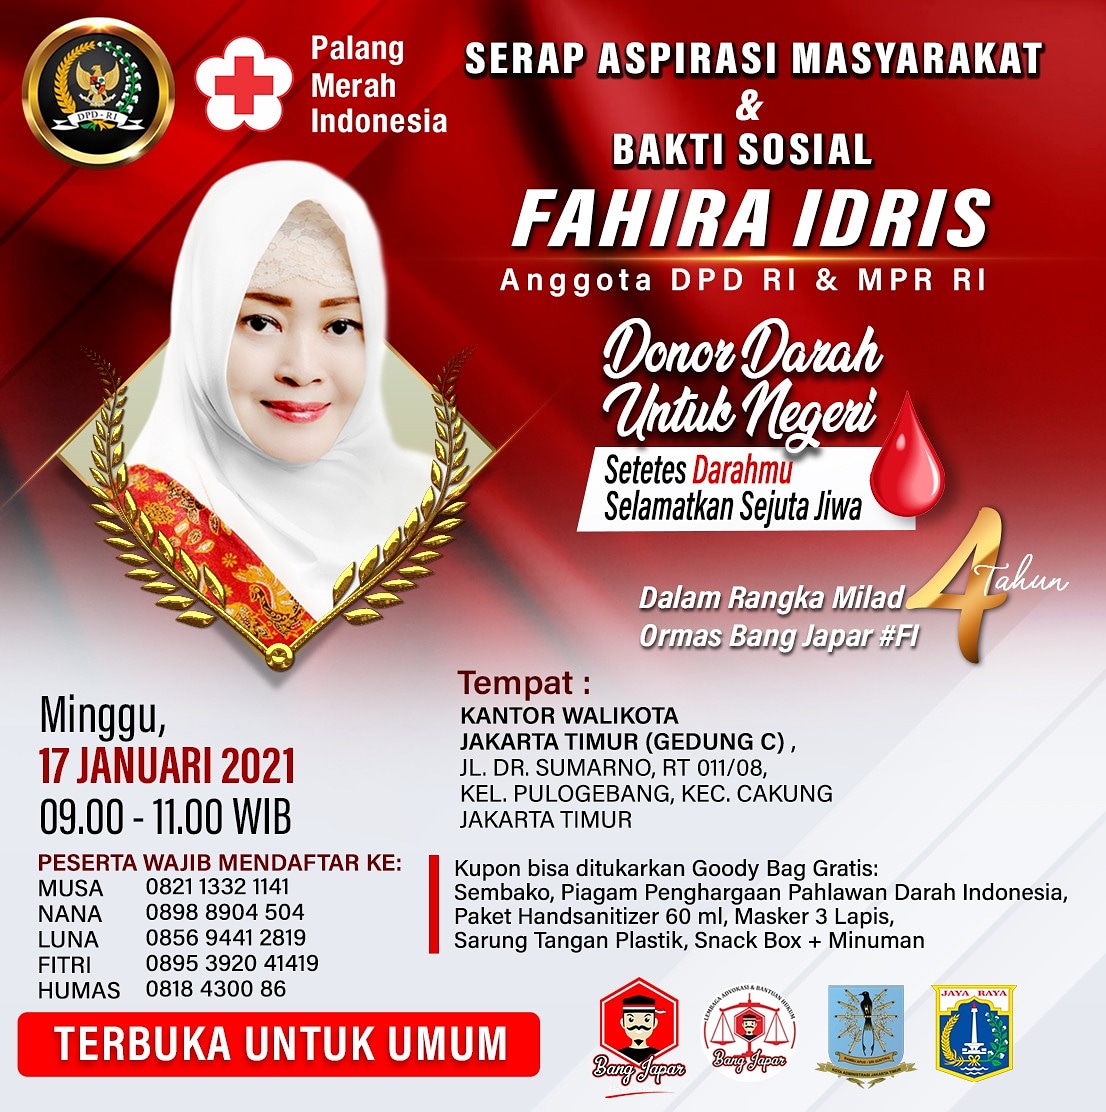 Serap Aspirasi Masyarakat & Bakti Sosial Fahira Idris Anggota DPD RI & MPR RI di Jakarta Timur